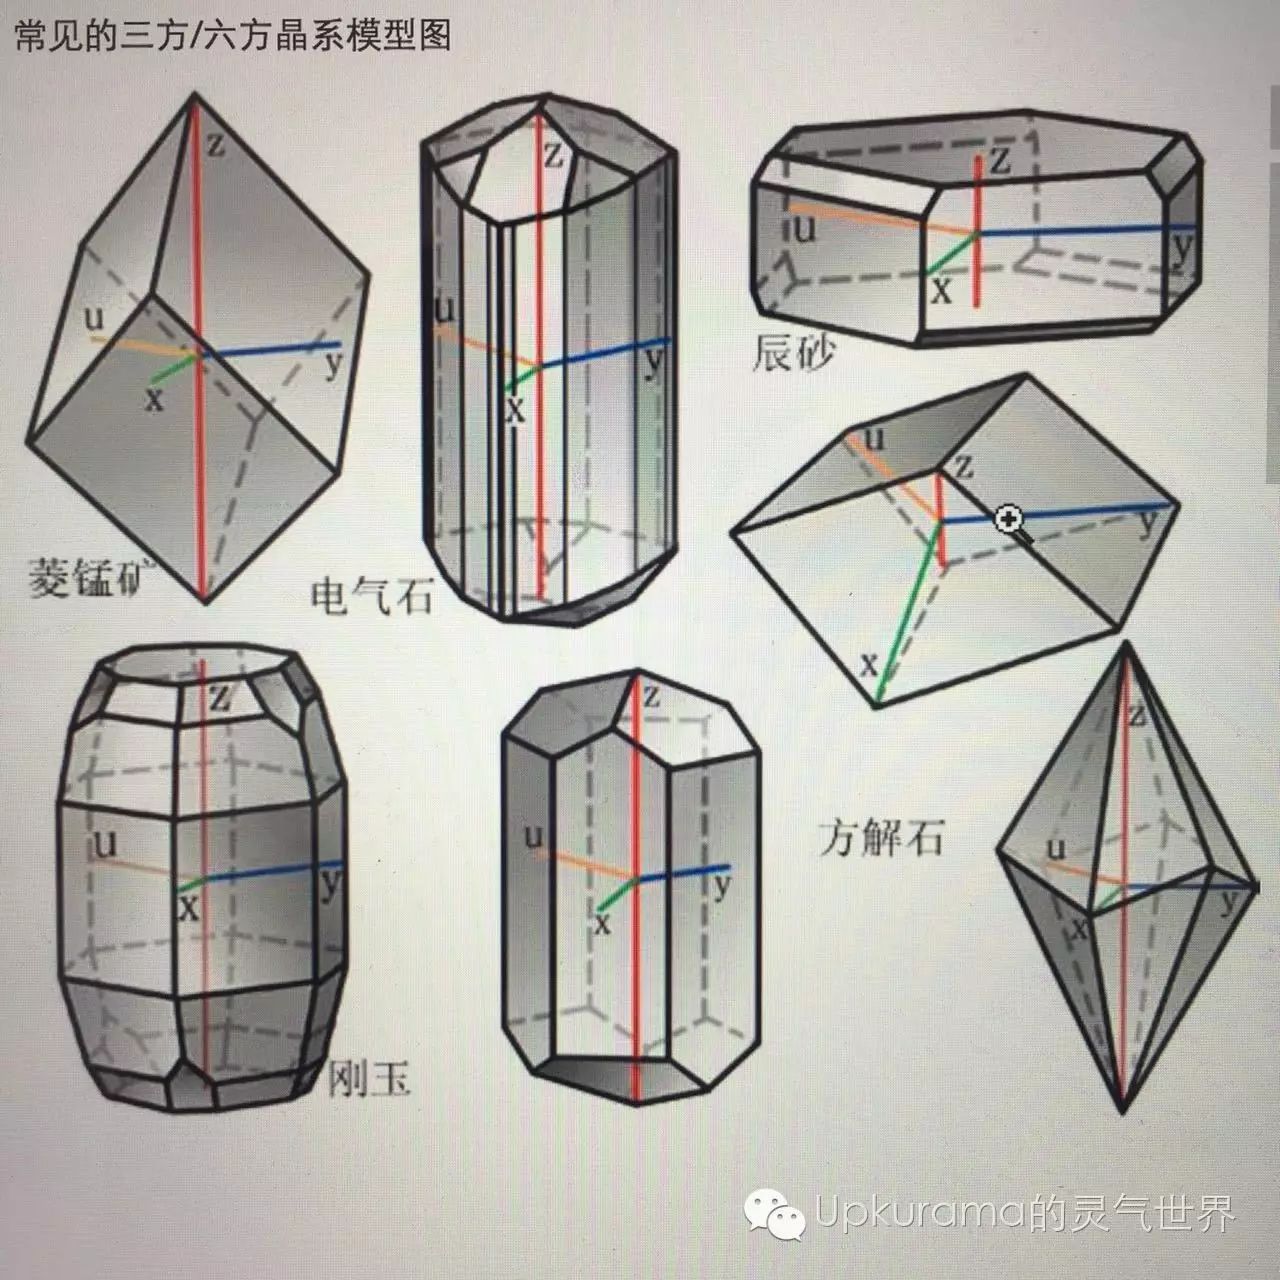 常见的晶体有三棱柱状,三角片状等,有时呈六棱柱,六角片状(复三方,复